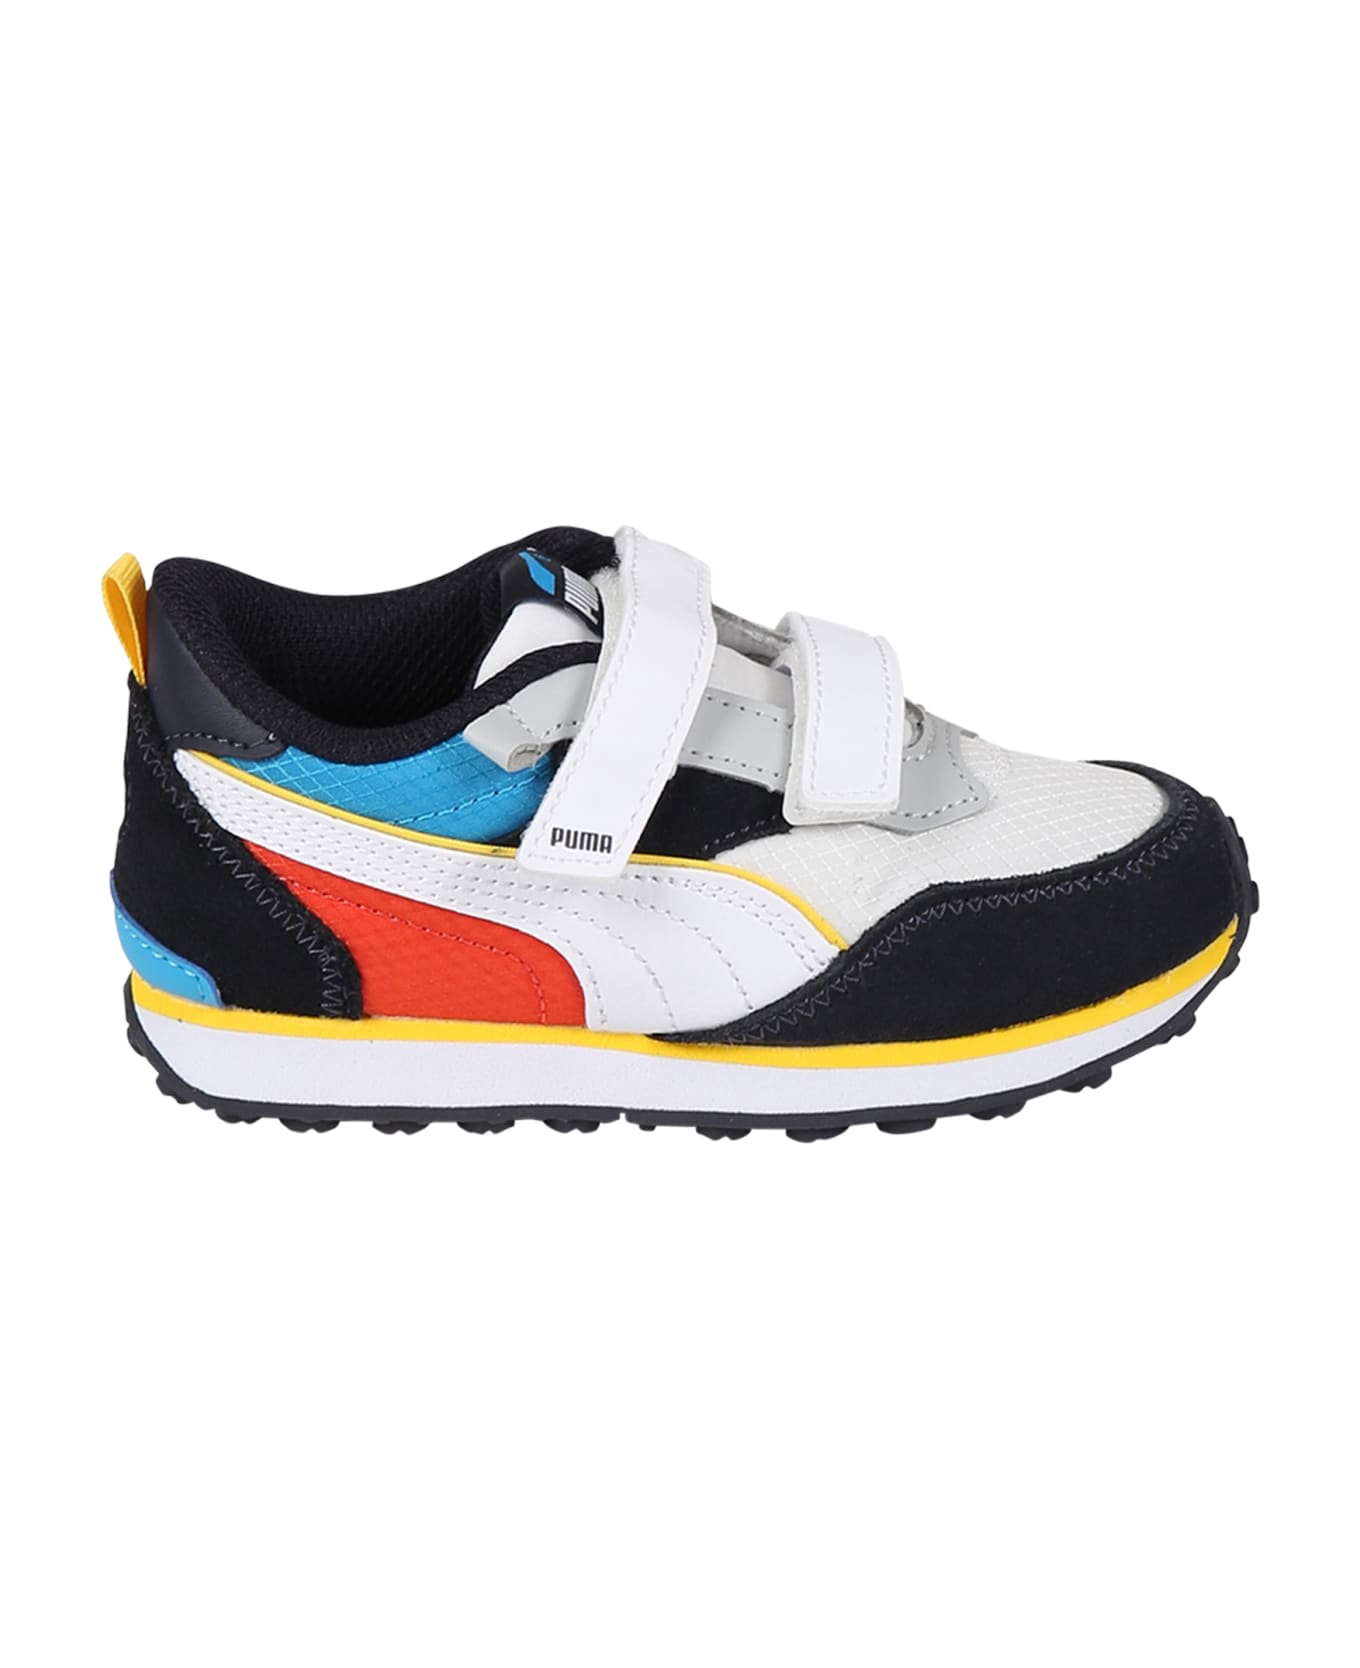 Puma Multicolor Sneakers For Boy With Logo - Multicolor